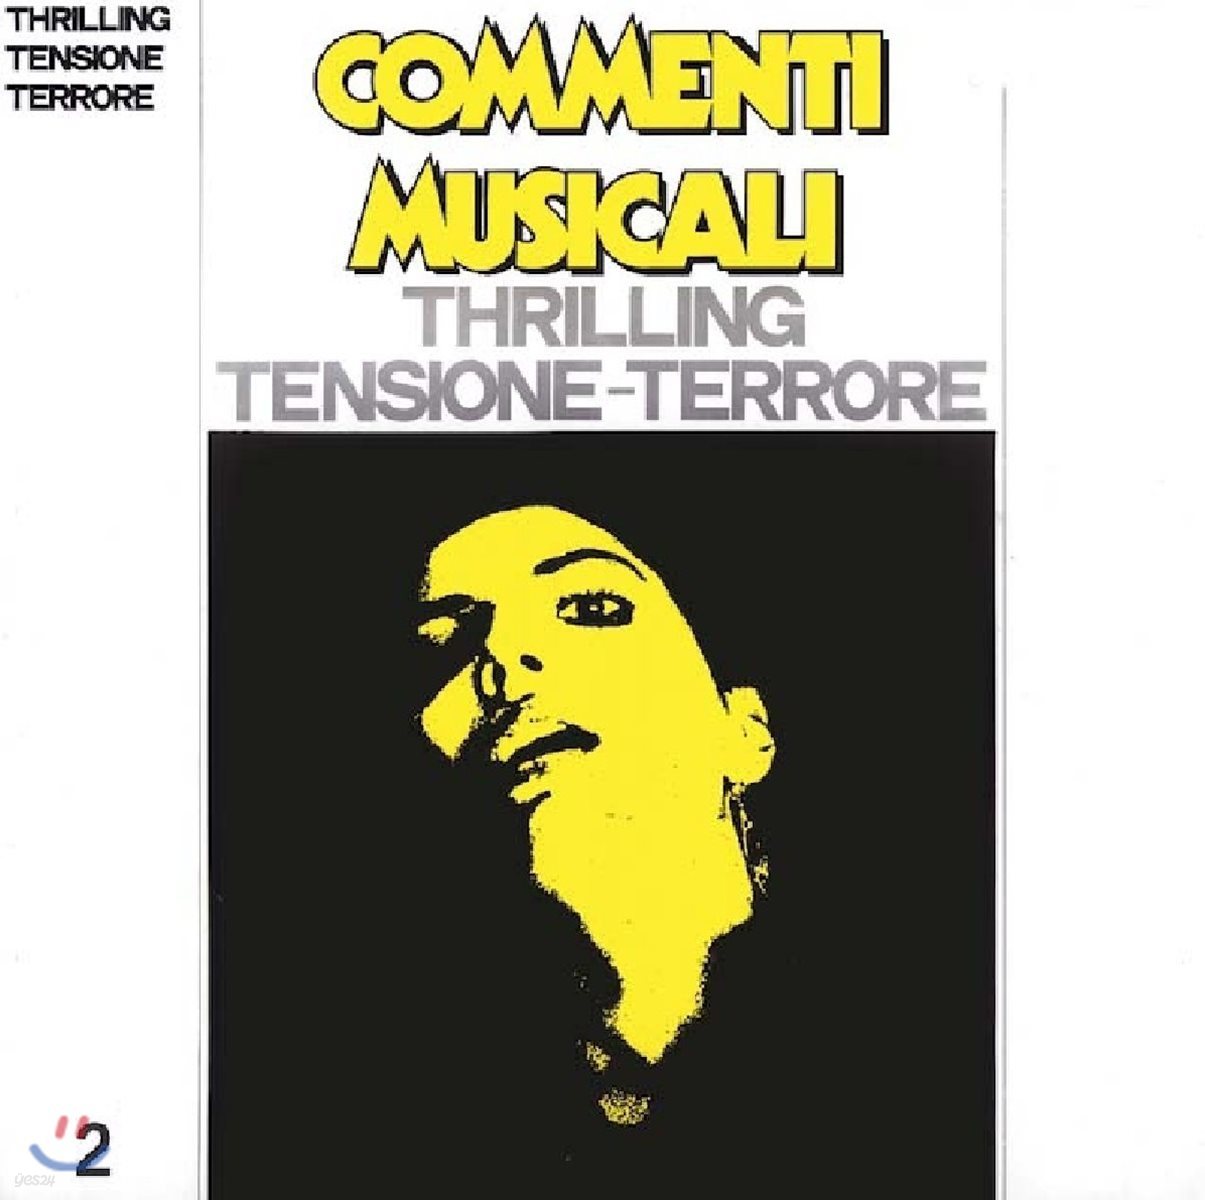 Commenti Musicali: Thrilling Tensione-Terrore 2 - Ansiogeni [LP]